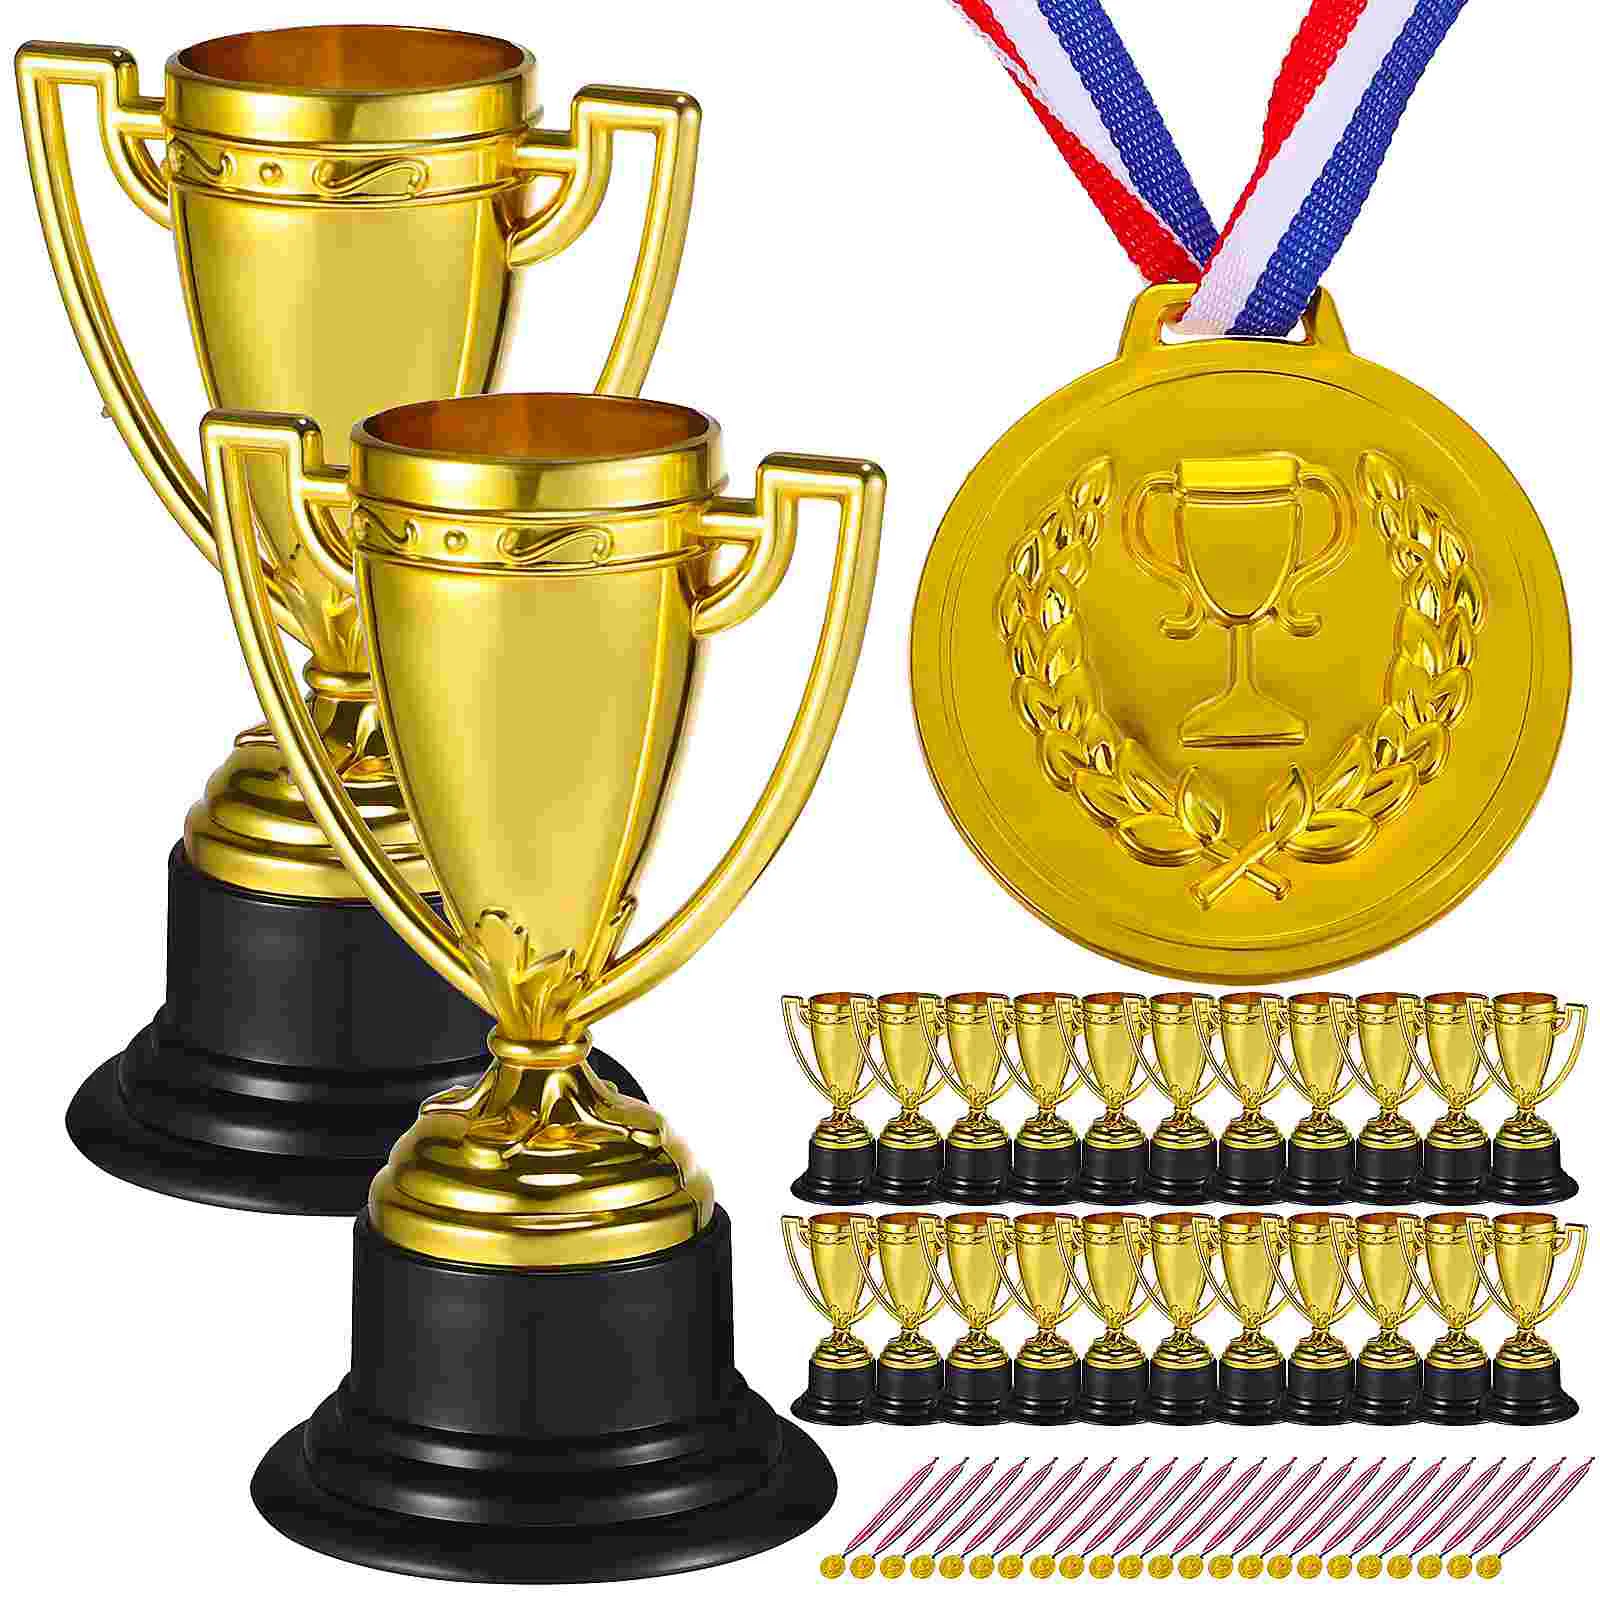 

24 набора, трофей, соревнований, трофей на первое место, образцы медалей для спортивных мероприятий